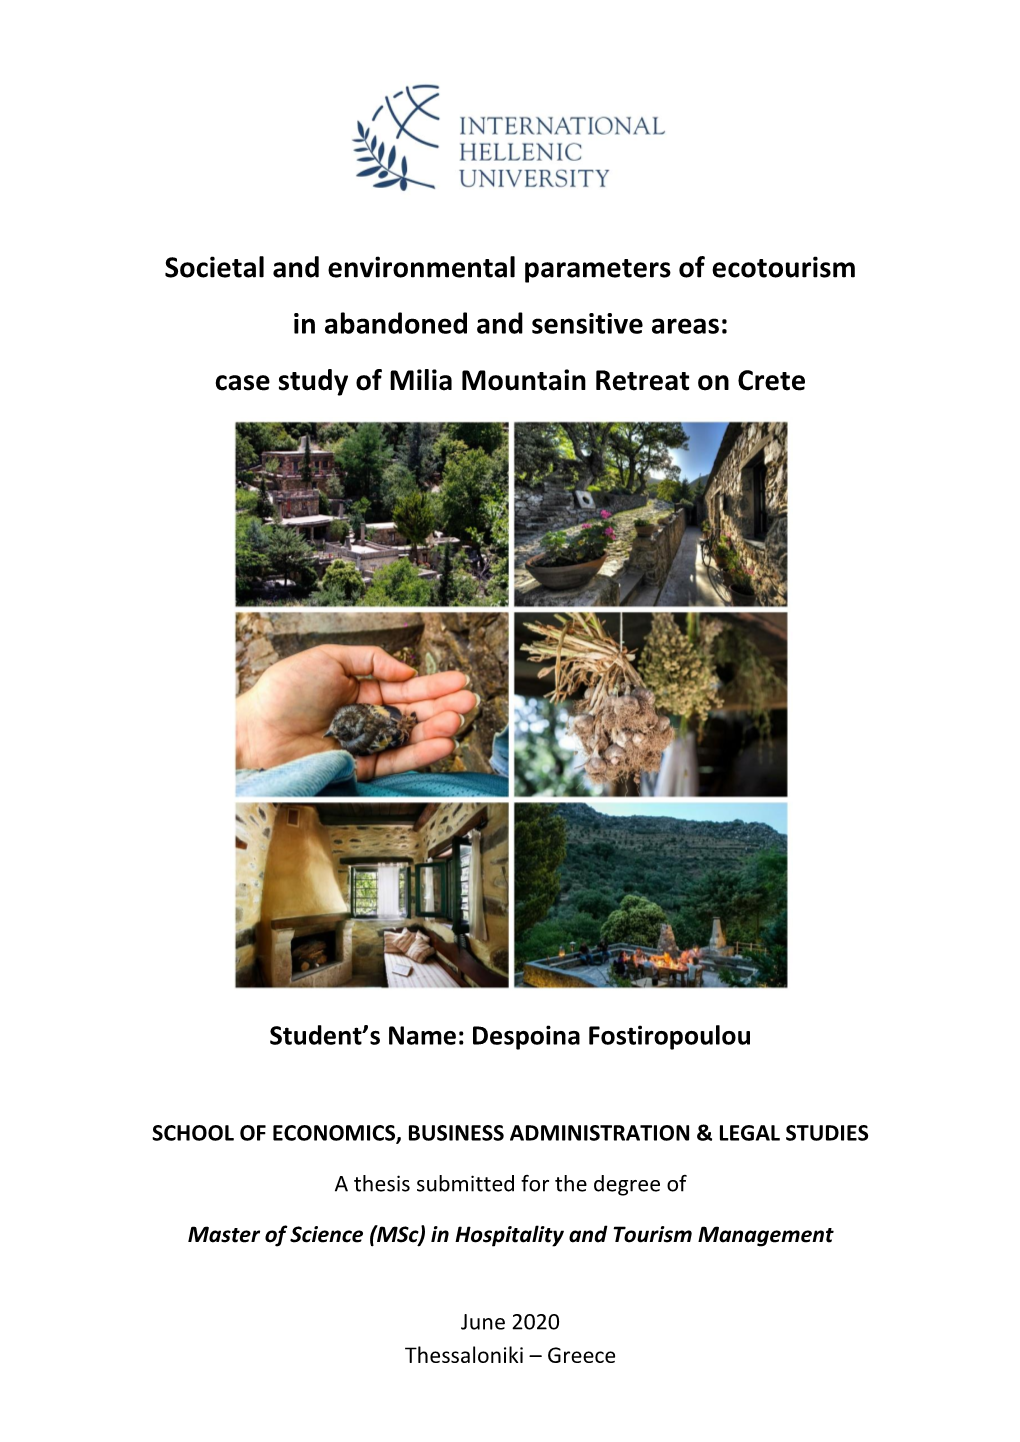 Case Study of Milia Mountain Retreat on Crete